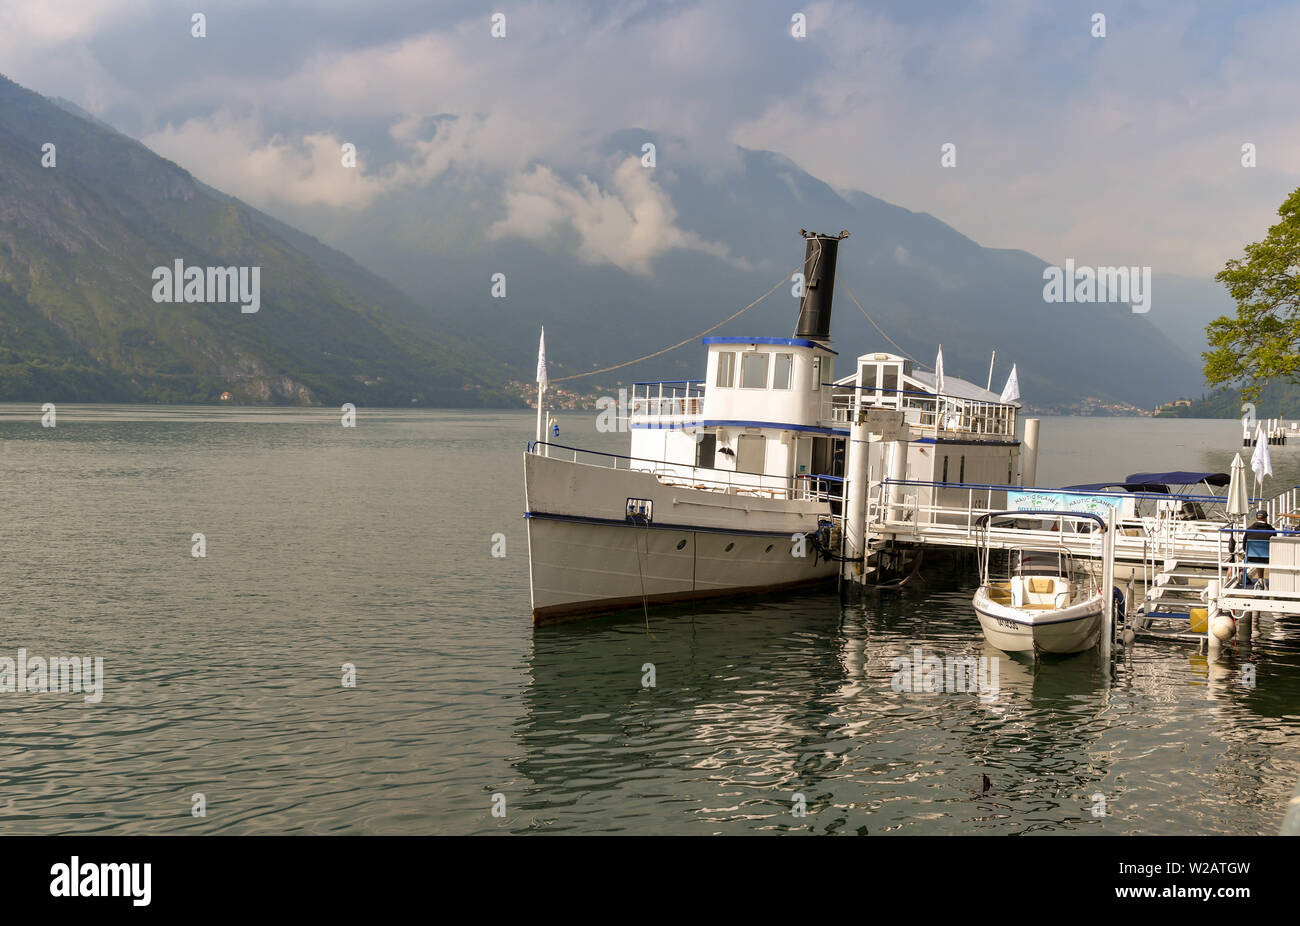 Le lac de Côme, Italie - Juin 2019 : ancien bateau à passagers Bisbino amarré en permanence à Cadenabbia sur le lac de Côme. Il est maintenant un restaurant et bar Banque D'Images